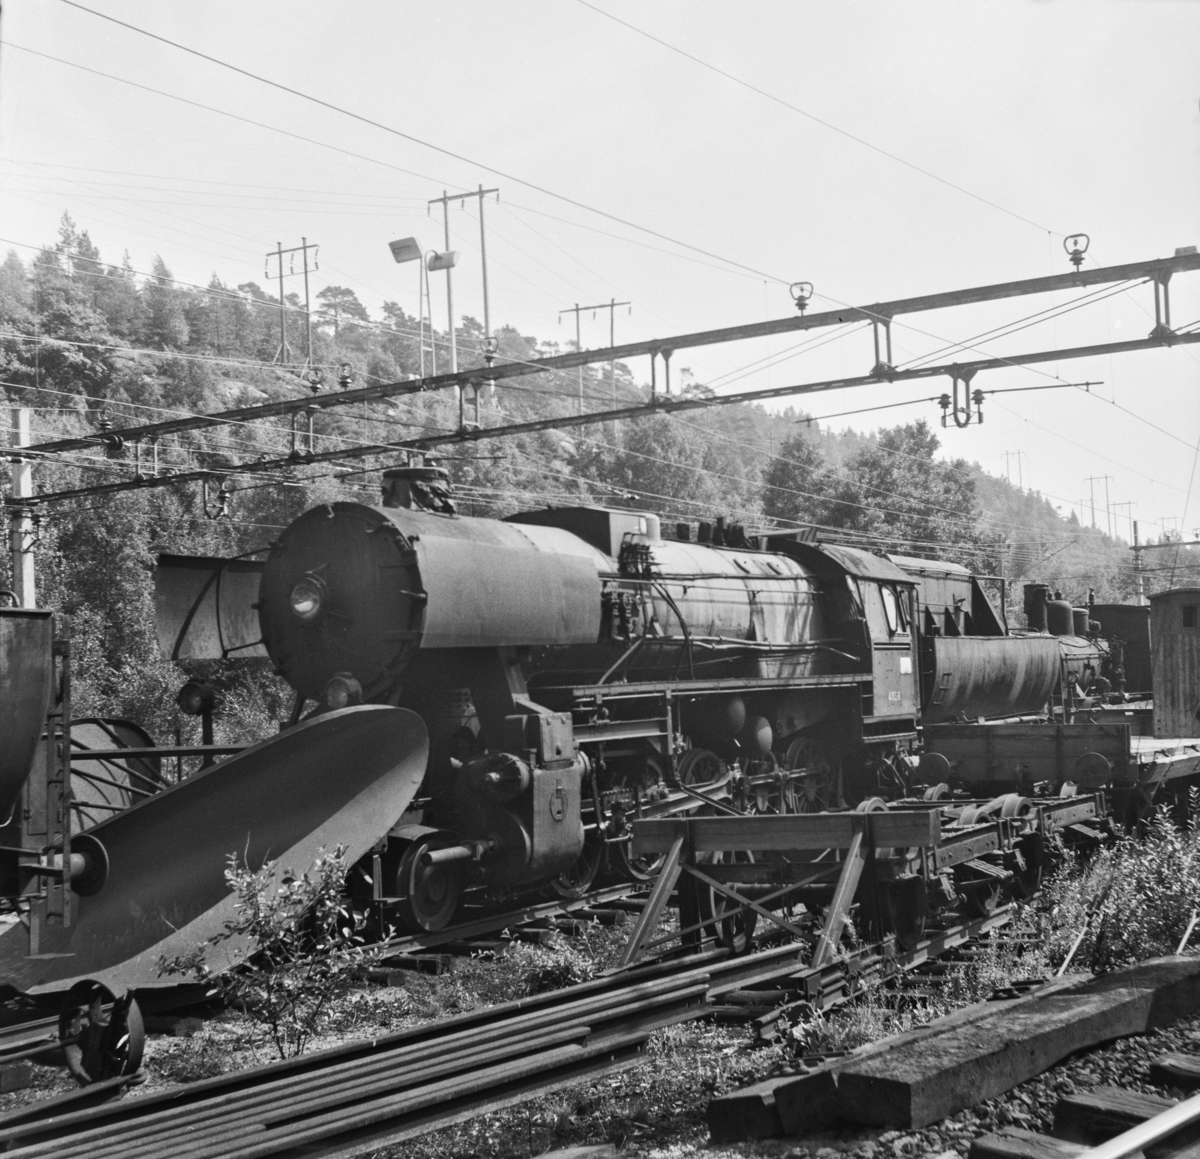 "Stortysker", damplokomotiv type 63a nr. 4836, her med stor frontplog, hensatt på Krossen ved Kristiansand. Lokomotivet ble formelt utrangert i 1970.